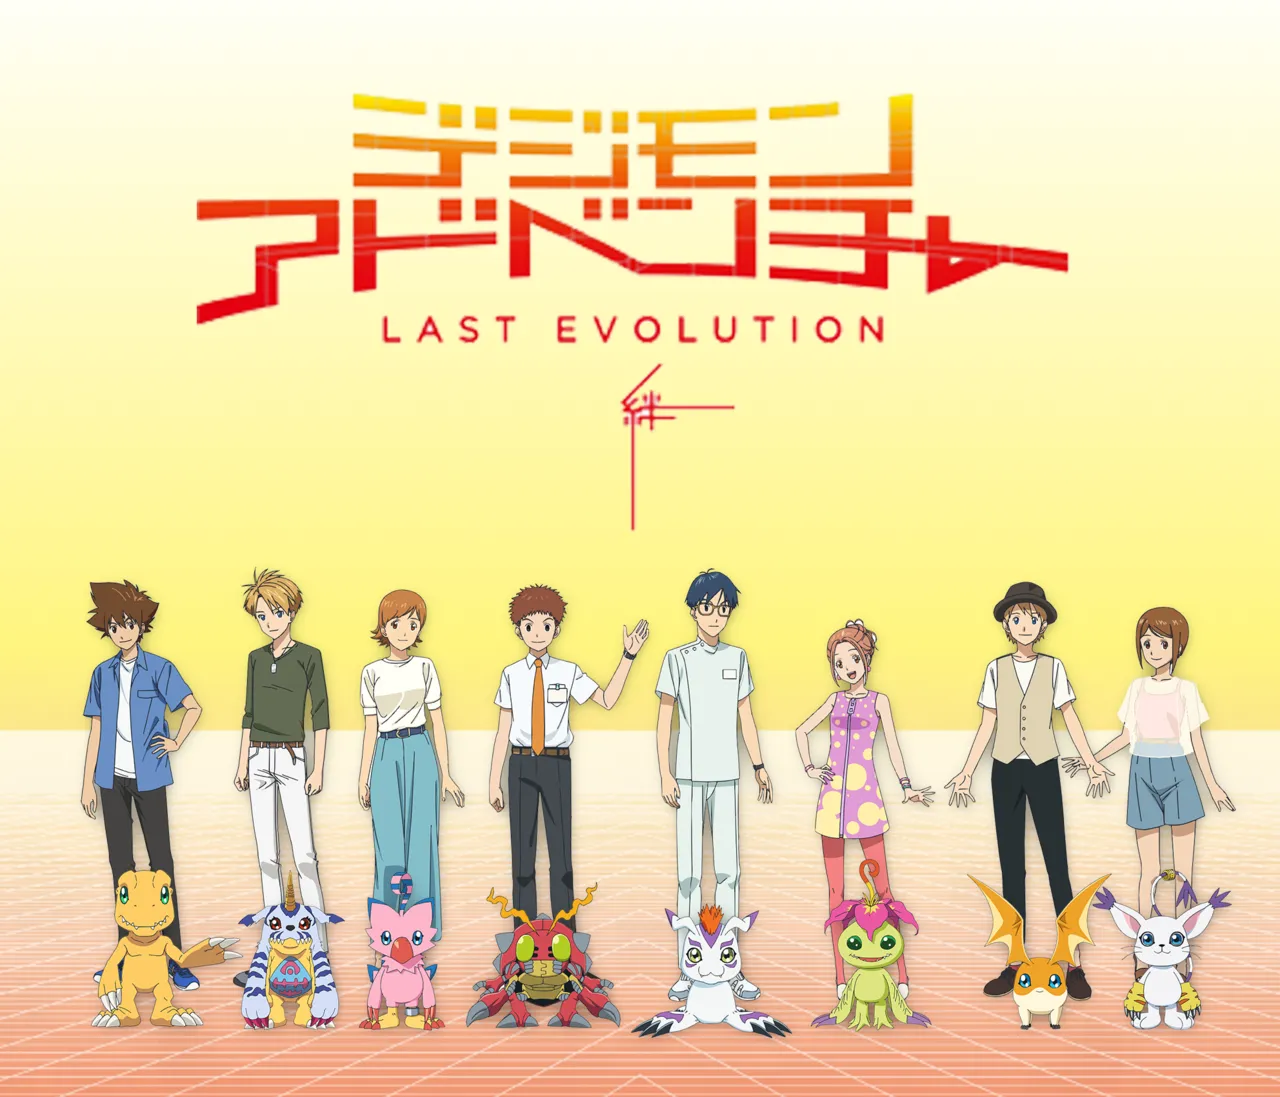 Nuevo trailer para Digimon Adventure: Last Evolution Kizuna